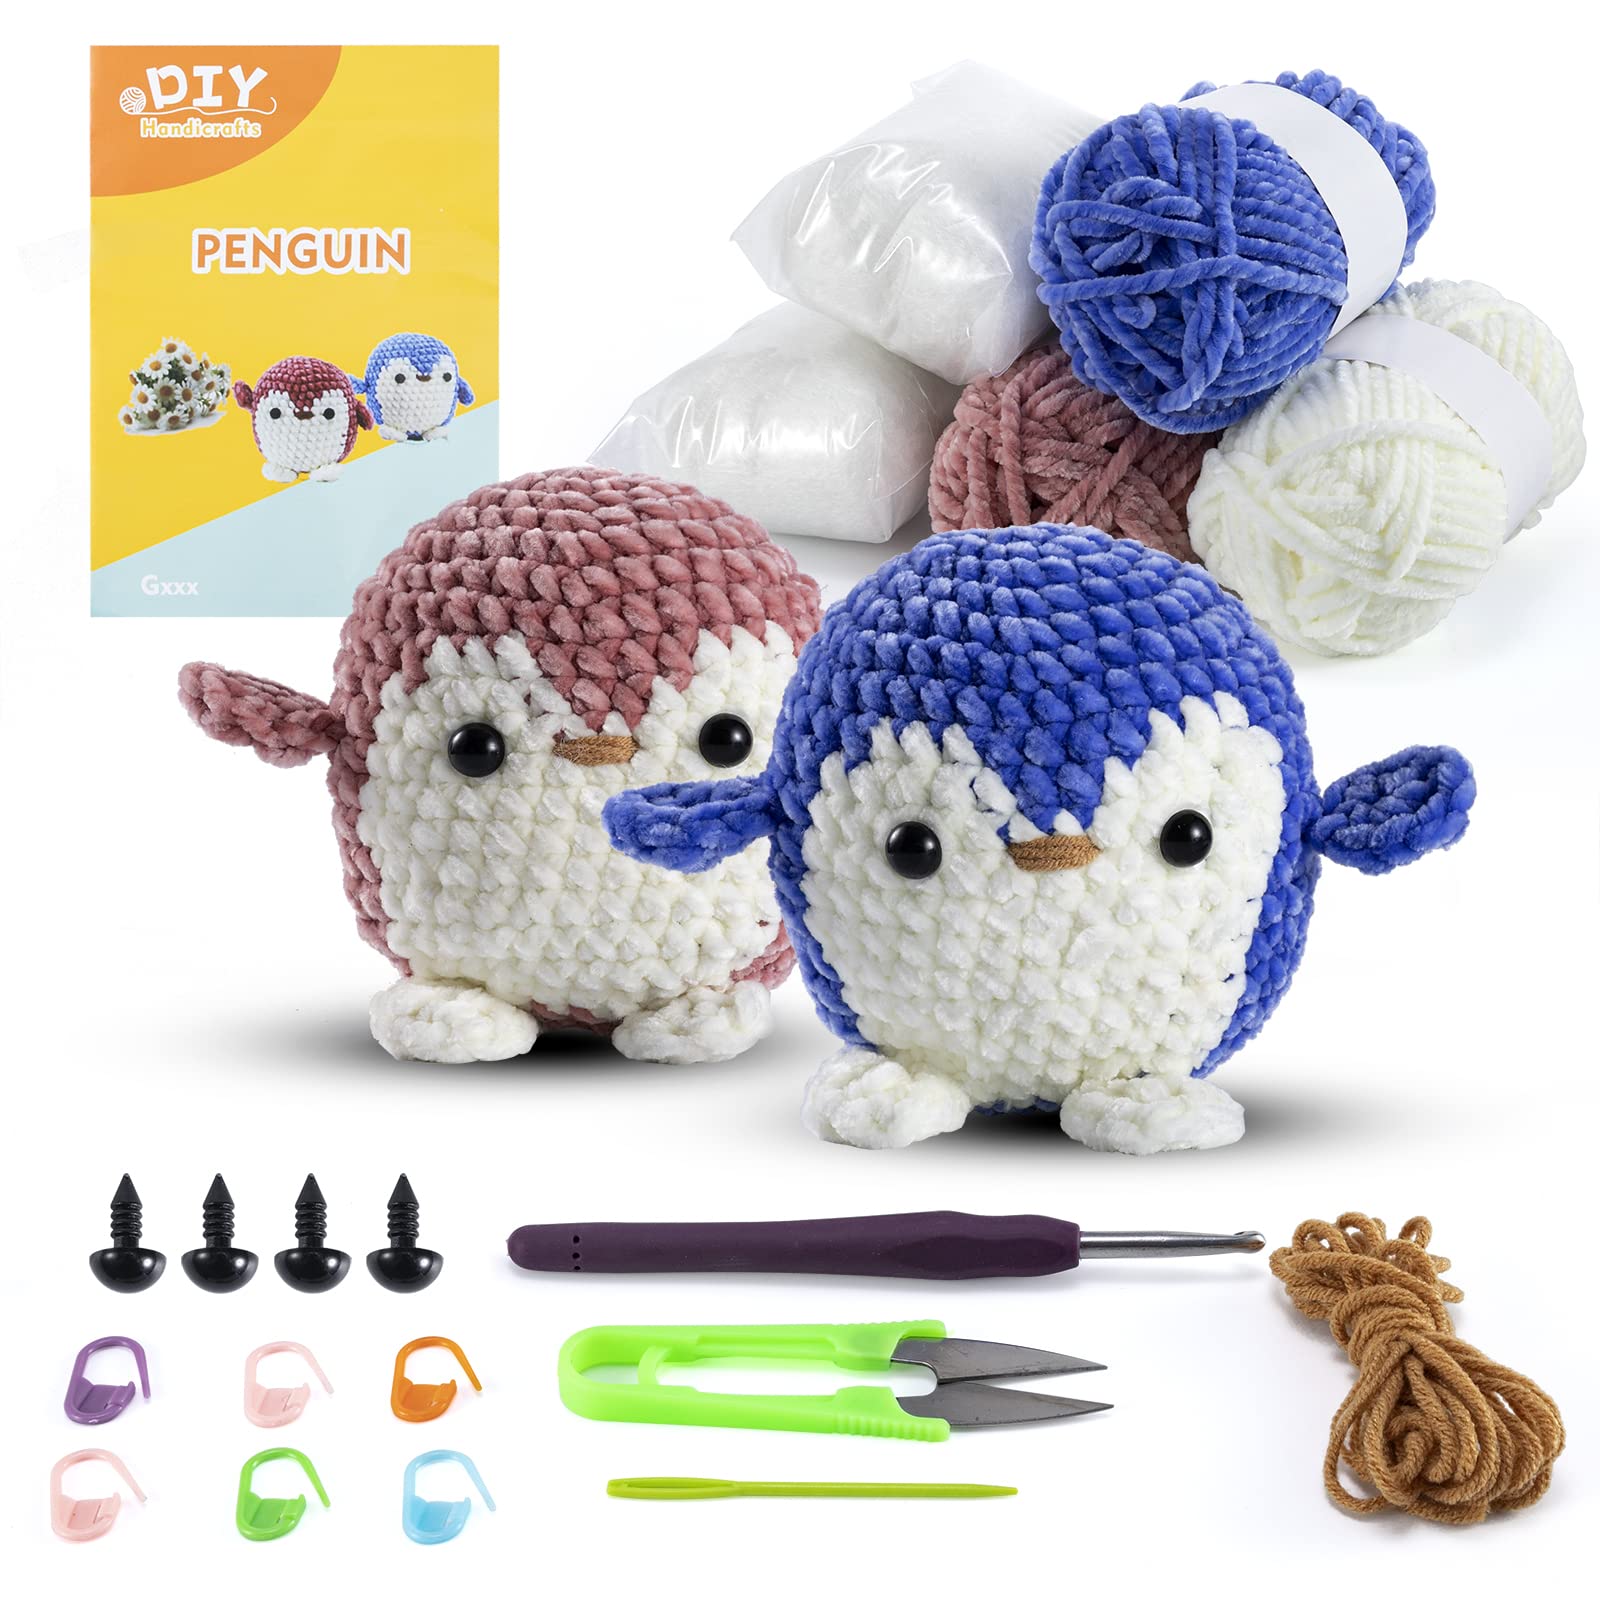 Crochet Kit for Beginners, Beginner Crochet Starter Kit W Step-by-Step Video Tutorials, Learn to Crochet Kits for Adults & Kids, DIY Knitting